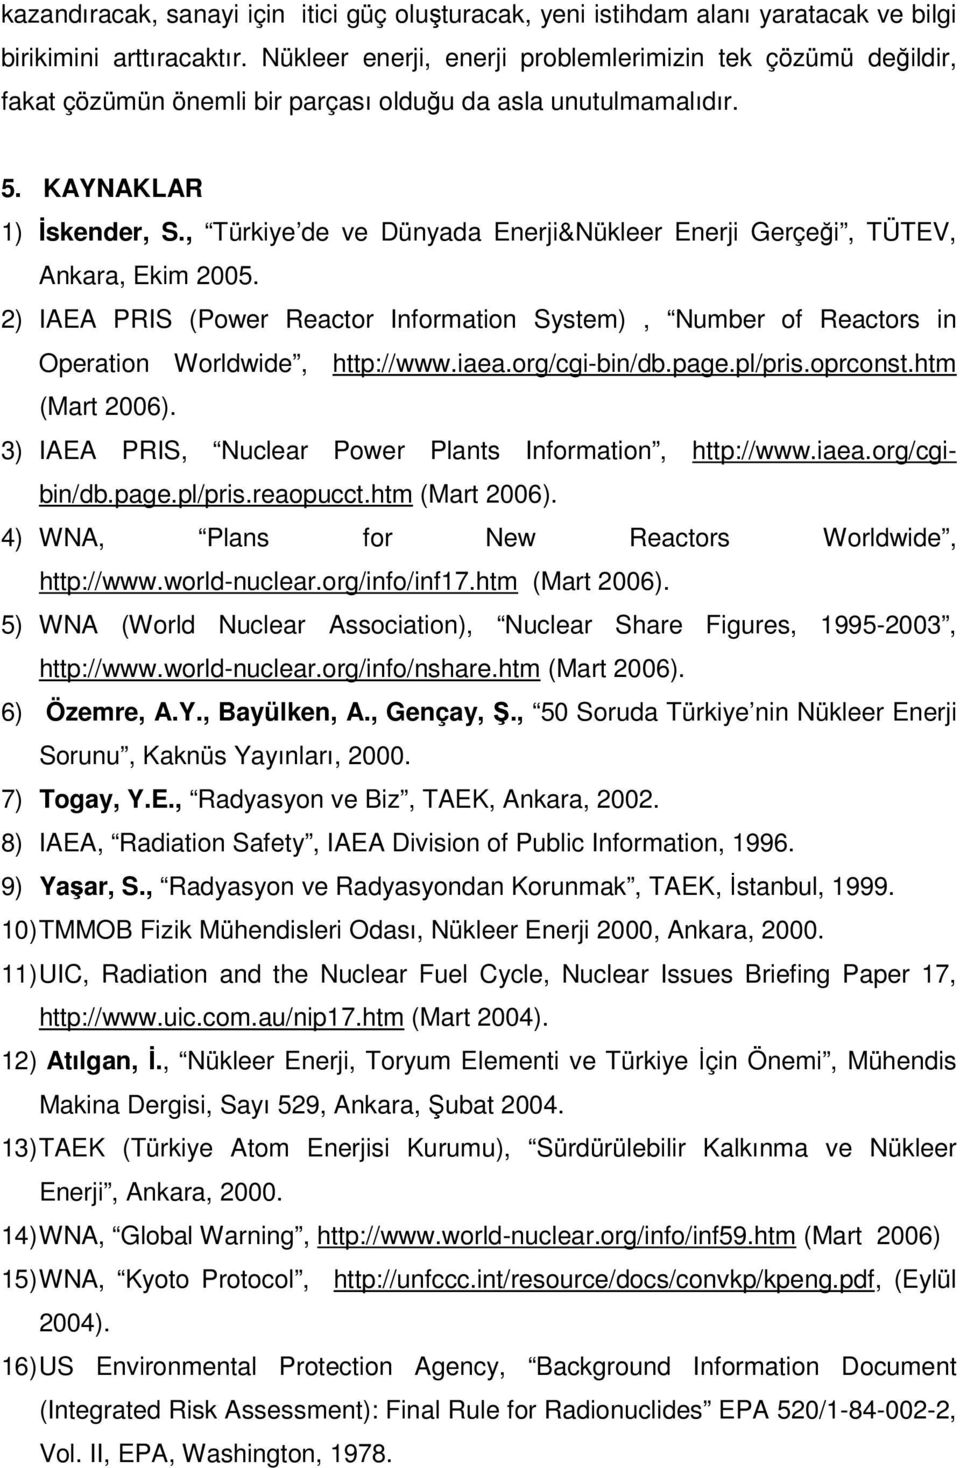 , Türkiye de ve Dünyada Enerji&Nükleer Enerji Gerçeği, TÜTEV, Ankara, Ekim 2005. 2) IAEA PRIS (Power Reactor Information System), Number of Reactors in Operation Worldwide, http://www.iaea.